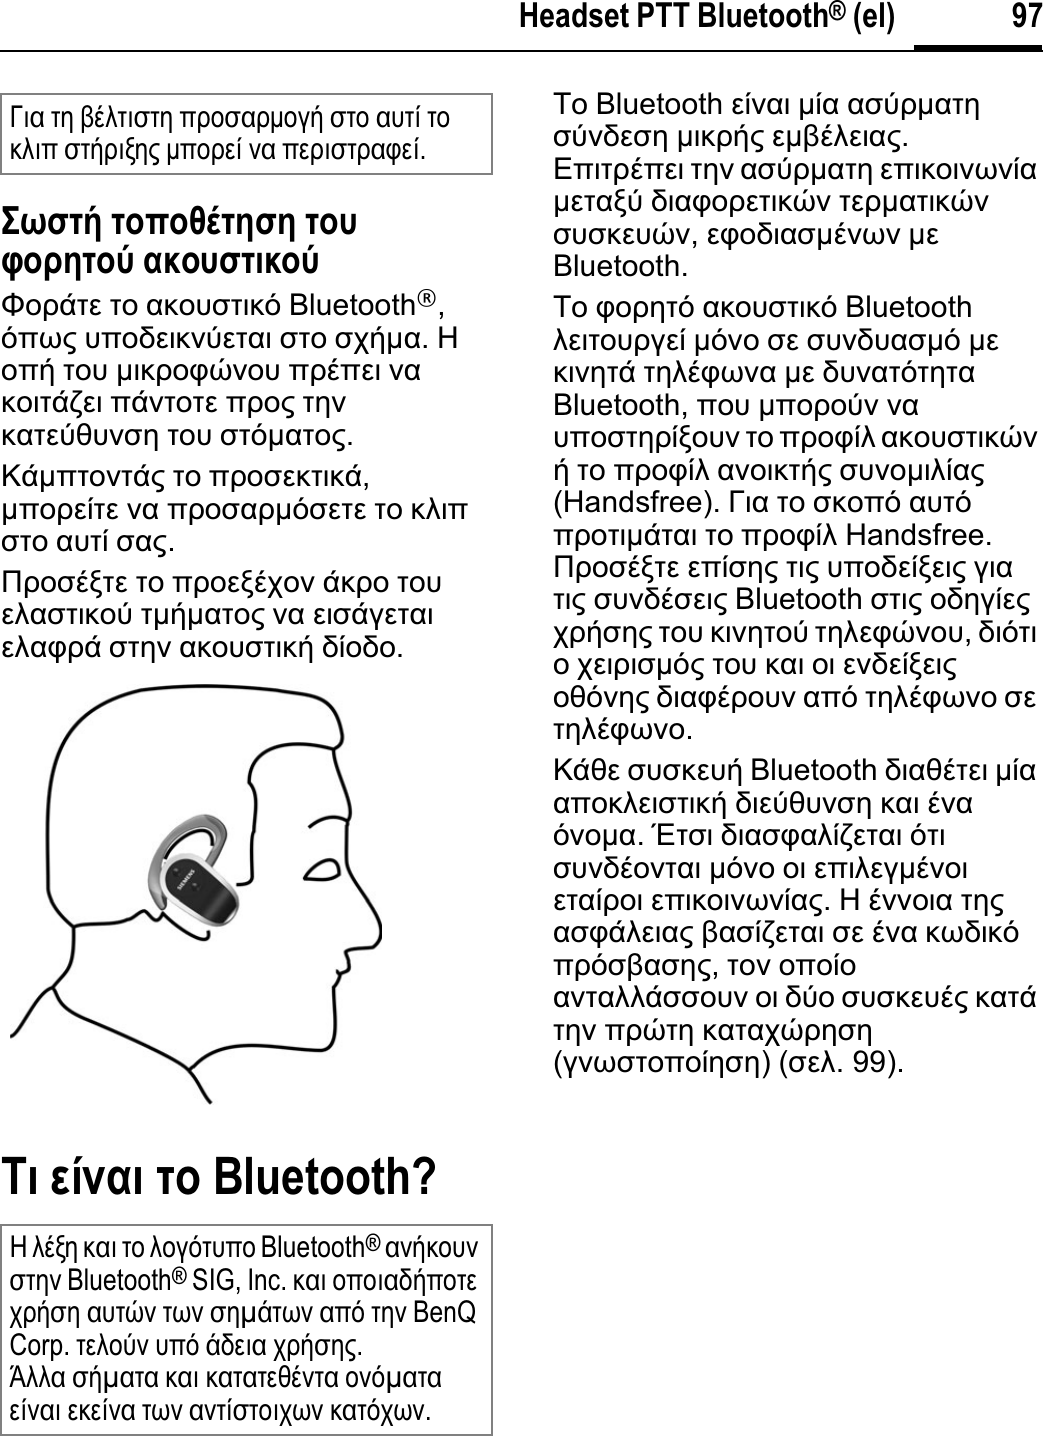 97Headset PTT Bluetooth® (el)ȉȧĲĳȓ ĳȡʍȡȚȒĳșĲș ĳȡȤĴȡȢșĳȡȫ įȜȡȤĲĳțȜȡȫĭȠȡȐĲİ ĲȠ ĮțȠȣıĲȚțȩ Bluetooth®,ȩʌȦȢ ȣʌȠįİȚțȞȪİĲĮȚ ıĲȠ ıȤȒµĮ.ǾȠʌȒ ĲȠȣ µȚțȡȠĳȫȞȠȣ ʌȡȑʌİȚ ȞĮțȠȚĲȐȗİȚ ʌȐȞĲȠĲİ ʌȡȠȢ ĲȘȞțĮĲİȪșȣȞıȘ ĲȠȣ ıĲȩµĮĲȠȢ.ȀȐµʌĲȠȞĲȐȢ ĲȠ ʌȡȠıİțĲȚțȐ,µʌȠȡİȓĲİ ȞĮ ʌȡȠıĮȡµȩıİĲİ ĲȠ țȜȚʌıĲȠ ĮȣĲȓ ıĮȢ.ȆȡȠıȑȟĲİ ĲȠ ʌȡȠİȟȑȤȠȞ ȐțȡȠ ĲȠȣİȜĮıĲȚțȠȪ ĲµȒµĮĲȠȢ ȞĮ İȚıȐȖİĲĮȚİȜĮĳȡȐ ıĲȘȞ ĮțȠȣıĲȚțȒ įȓȠįȠ.Ȋț ıȔȟįț ĳȡ Bluetooth?ȉȠ Bluetooth İȓȞĮȚ µȓĮ ĮıȪȡµĮĲȘıȪȞįİıȘ µȚțȡȒȢ İµȕȑȜİȚĮȢ.ǼʌȚĲȡȑʌİȚ ĲȘȞ ĮıȪȡµĮĲȘ İʌȚțȠȚȞȦȞȓĮµİĲĮȟȪ įȚĮĳȠȡİĲȚțȫȞ ĲİȡµĮĲȚțȫȞıȣıțİȣȫȞ,İĳȠįȚĮıµȑȞȦȞ µİBluetooth.ȉȠ ĳȠȡȘĲȩ ĮțȠȣıĲȚțȩ Bluetooth ȜİȚĲȠȣȡȖİȓ µȩȞȠ ıİ ıȣȞįȣĮıµȩ µİțȚȞȘĲȐ ĲȘȜȑĳȦȞĮ µİ įȣȞĮĲȩĲȘĲĮBluetooth, ʌȠȣ µʌȠȡȠȪȞ ȞĮȣʌȠıĲȘȡȓȟȠȣȞ ĲȠ ʌȡȠĳȓȜ ĮțȠȣıĲȚțȫȞȒ ĲȠ ʌȡȠĳȓȜ ĮȞȠȚțĲȒȢ ıȣȞȠµȚȜȓĮȢ(Handsfree). īȚĮ ĲȠ ıțȠʌȩ ĮȣĲȩʌȡȠĲȚµȐĲĮȚ ĲȠ ʌȡȠĳȓȜ Handsfree. ȆȡȠıȑȟĲİ İʌȓıȘȢ ĲȚȢ ȣʌȠįİȓȟİȚȢ ȖȚĮĲȚȢ ıȣȞįȑıİȚȢ Bluetooth ıĲȚȢ ȠįȘȖȓİȢȤȡȒıȘȢ ĲȠȣ țȚȞȘĲȠȪ ĲȘȜİĳȫȞȠȣ,įȚȩĲȚȠȤİȚȡȚıµȩȢ ĲȠȣ țĮȚ ȠȚ İȞįİȓȟİȚȢȠșȩȞȘȢ įȚĮĳȑȡȠȣȞ Įʌȩ ĲȘȜȑĳȦȞȠ ıİĲȘȜȑĳȦȞȠ.ȀȐșİ ıȣıțİȣȒ Bluetooth įȚĮșȑĲİȚ µȓĮĮʌȠțȜİȚıĲȚțȒ įȚİȪșȣȞıȘ țĮȚ ȑȞĮȩȞȠµĮ.ǲĲıȚ įȚĮıĳĮȜȓȗİĲĮȚ ȩĲȚıȣȞįȑȠȞĲĮȚ µȩȞȠ ȠȚ İʌȚȜİȖµȑȞȠȚİĲĮȓȡȠȚ İʌȚțȠȚȞȦȞȓĮȢ.Ǿ ȑȞȞȠȚĮ ĲȘȢĮıĳȐȜİȚĮȢ ȕĮıȓȗİĲĮȚ ıİ ȑȞĮ țȦįȚțȩʌȡȩıȕĮıȘȢ,ĲȠȞ ȠʌȠȓȠĮȞĲĮȜȜȐııȠȣȞ ȠȚ įȪȠ ıȣıțİȣȑȢ țĮĲȐĲȘȞ ʌȡȫĲȘ țĮĲĮȤȫȡȘıȘ(ȖȞȦıĲȠʌȠȓȘıȘ) (ıİȜ. 99).īȚĮ ĲȘ ȕȑȜĲȚıĲȘ ʌȡȠıĮȡµȠȖȒ ıĲȠ ĮȣĲȓ ĲȠțȜȚʌ ıĲȒȡȚȟȘȢ µʌȠȡİȓ ȞĮ ʌİȡȚıĲȡĮĳİȓ.Ǿ ȜȑȟȘ țĮȚ ĲȠ ȜȠȖȩĲȣʌȠ Bluetooth®ĮȞȒțȠȣȞıĲȘȞ Bluetooth® SIG, Inc. țĮȚ ȠʌȠȚĮįȒʌȠĲİȤȡȒıȘ ĮȣĲȫȞ ĲȦȞ ıȘµȐĲȦȞ Įʌȩ ĲȘȞ BenQ Corp. ĲİȜȠȪȞ ȣʌȩ ȐįİȚĮ ȤȡȒıȘȢ.ǱȜȜĮ ıȒµĮĲĮ țĮȚ țĮĲĮĲİșȑȞĲĮ ȠȞȩµĮĲĮİȓȞĮȚİțİȓȞĮĲȦȞĮȞĲȓıĲȠȚȤȦȞțĮĲȩȤȦȞ.